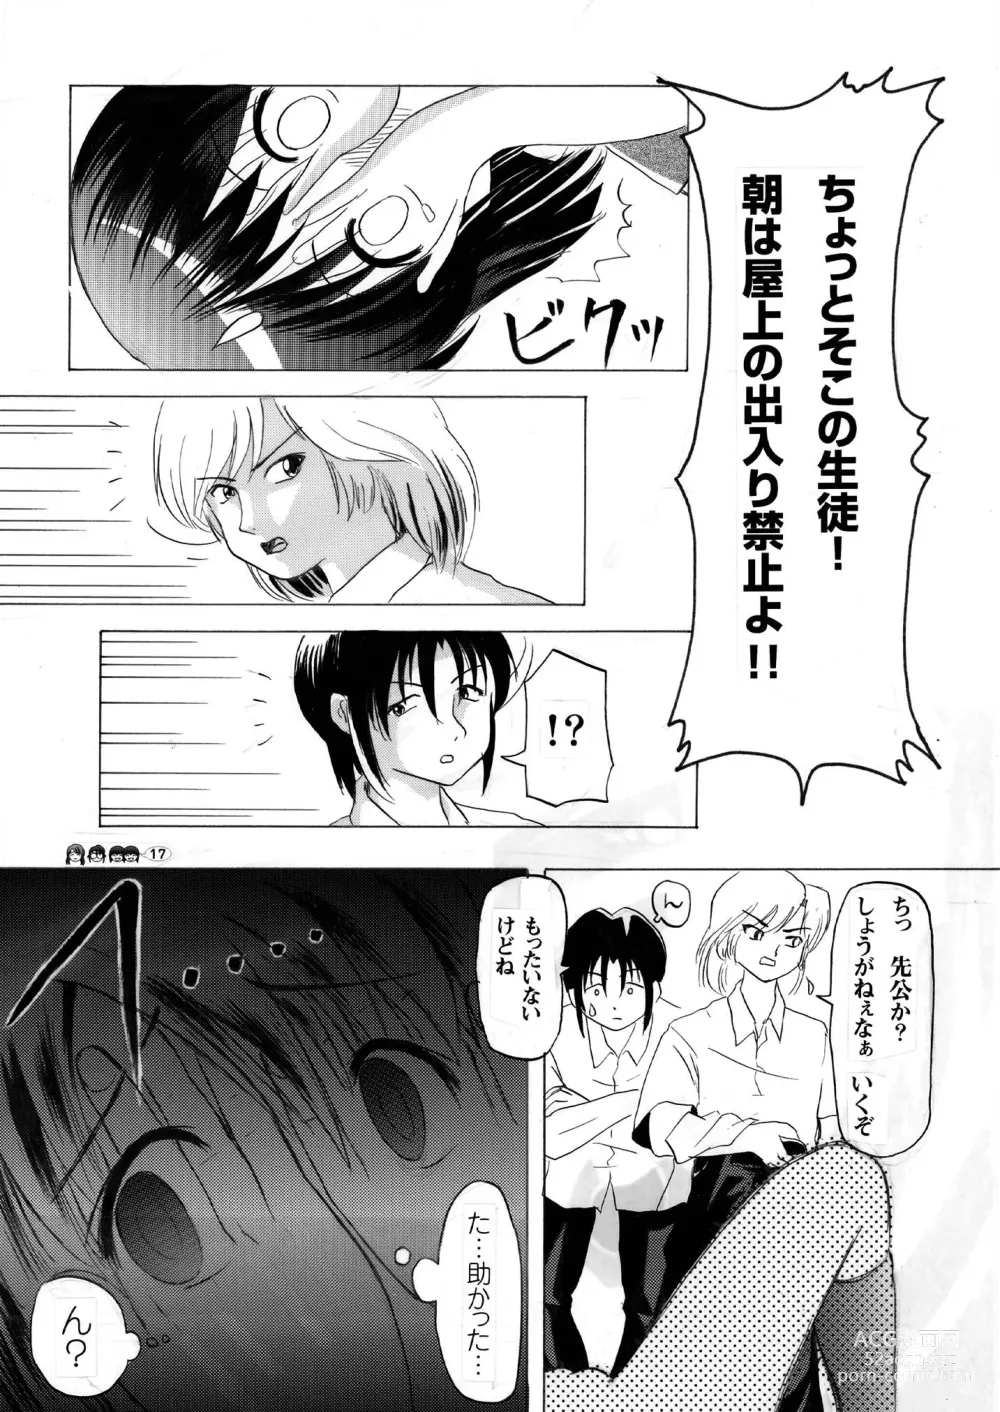 Page 17 of doujinshi Sachina no Koukou Nikki 3